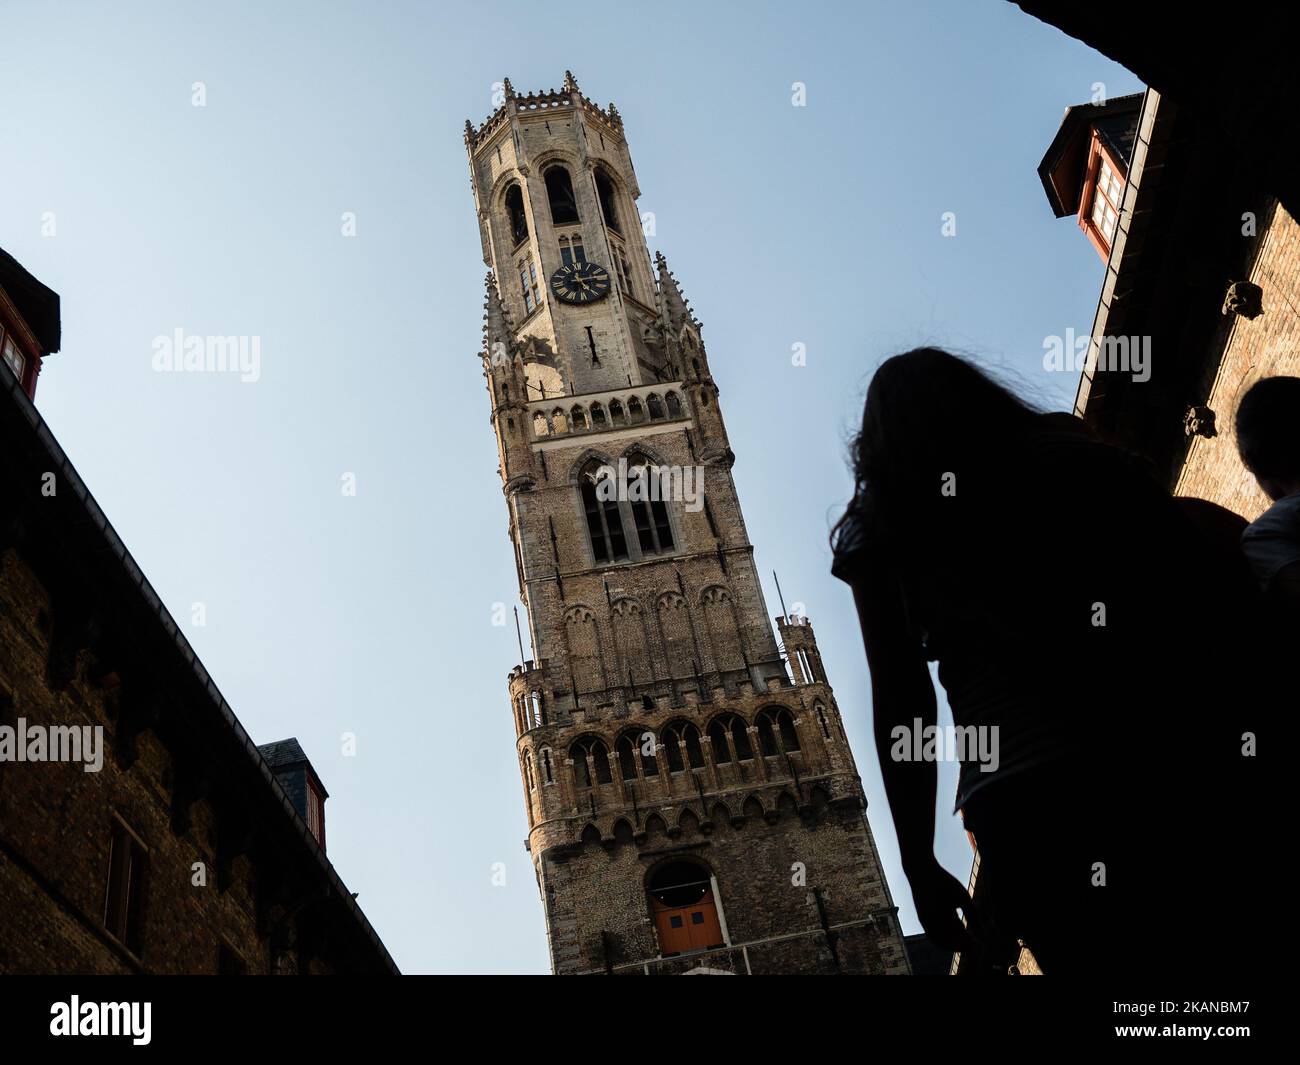 Una panoramica delle architetture storiche a Bruges il 27th maggio 2017. Durante uno dei giorni più caldi dell'anno, Bruges è stata la destinazione scelta da migliaia di turisti provenienti da tutto il mondo. Questa è la capitale e la città più grande della provincia delle Fiandre Occidentali nella regione fiamminga del Belgio, nel nord-ovest del paese. Essendo Bruges un'enorme destinazione turistica, i turisti hanno molte scelte per godersi la città, come escursioni in carrozza trainata da cavalli, tour dei canali in barca o semplicemente passeggiate nel centro storico della città. (Foto di Romy Arroyo Fernandez/NurPhoto) *** Please use Credit from Credi Foto Stock